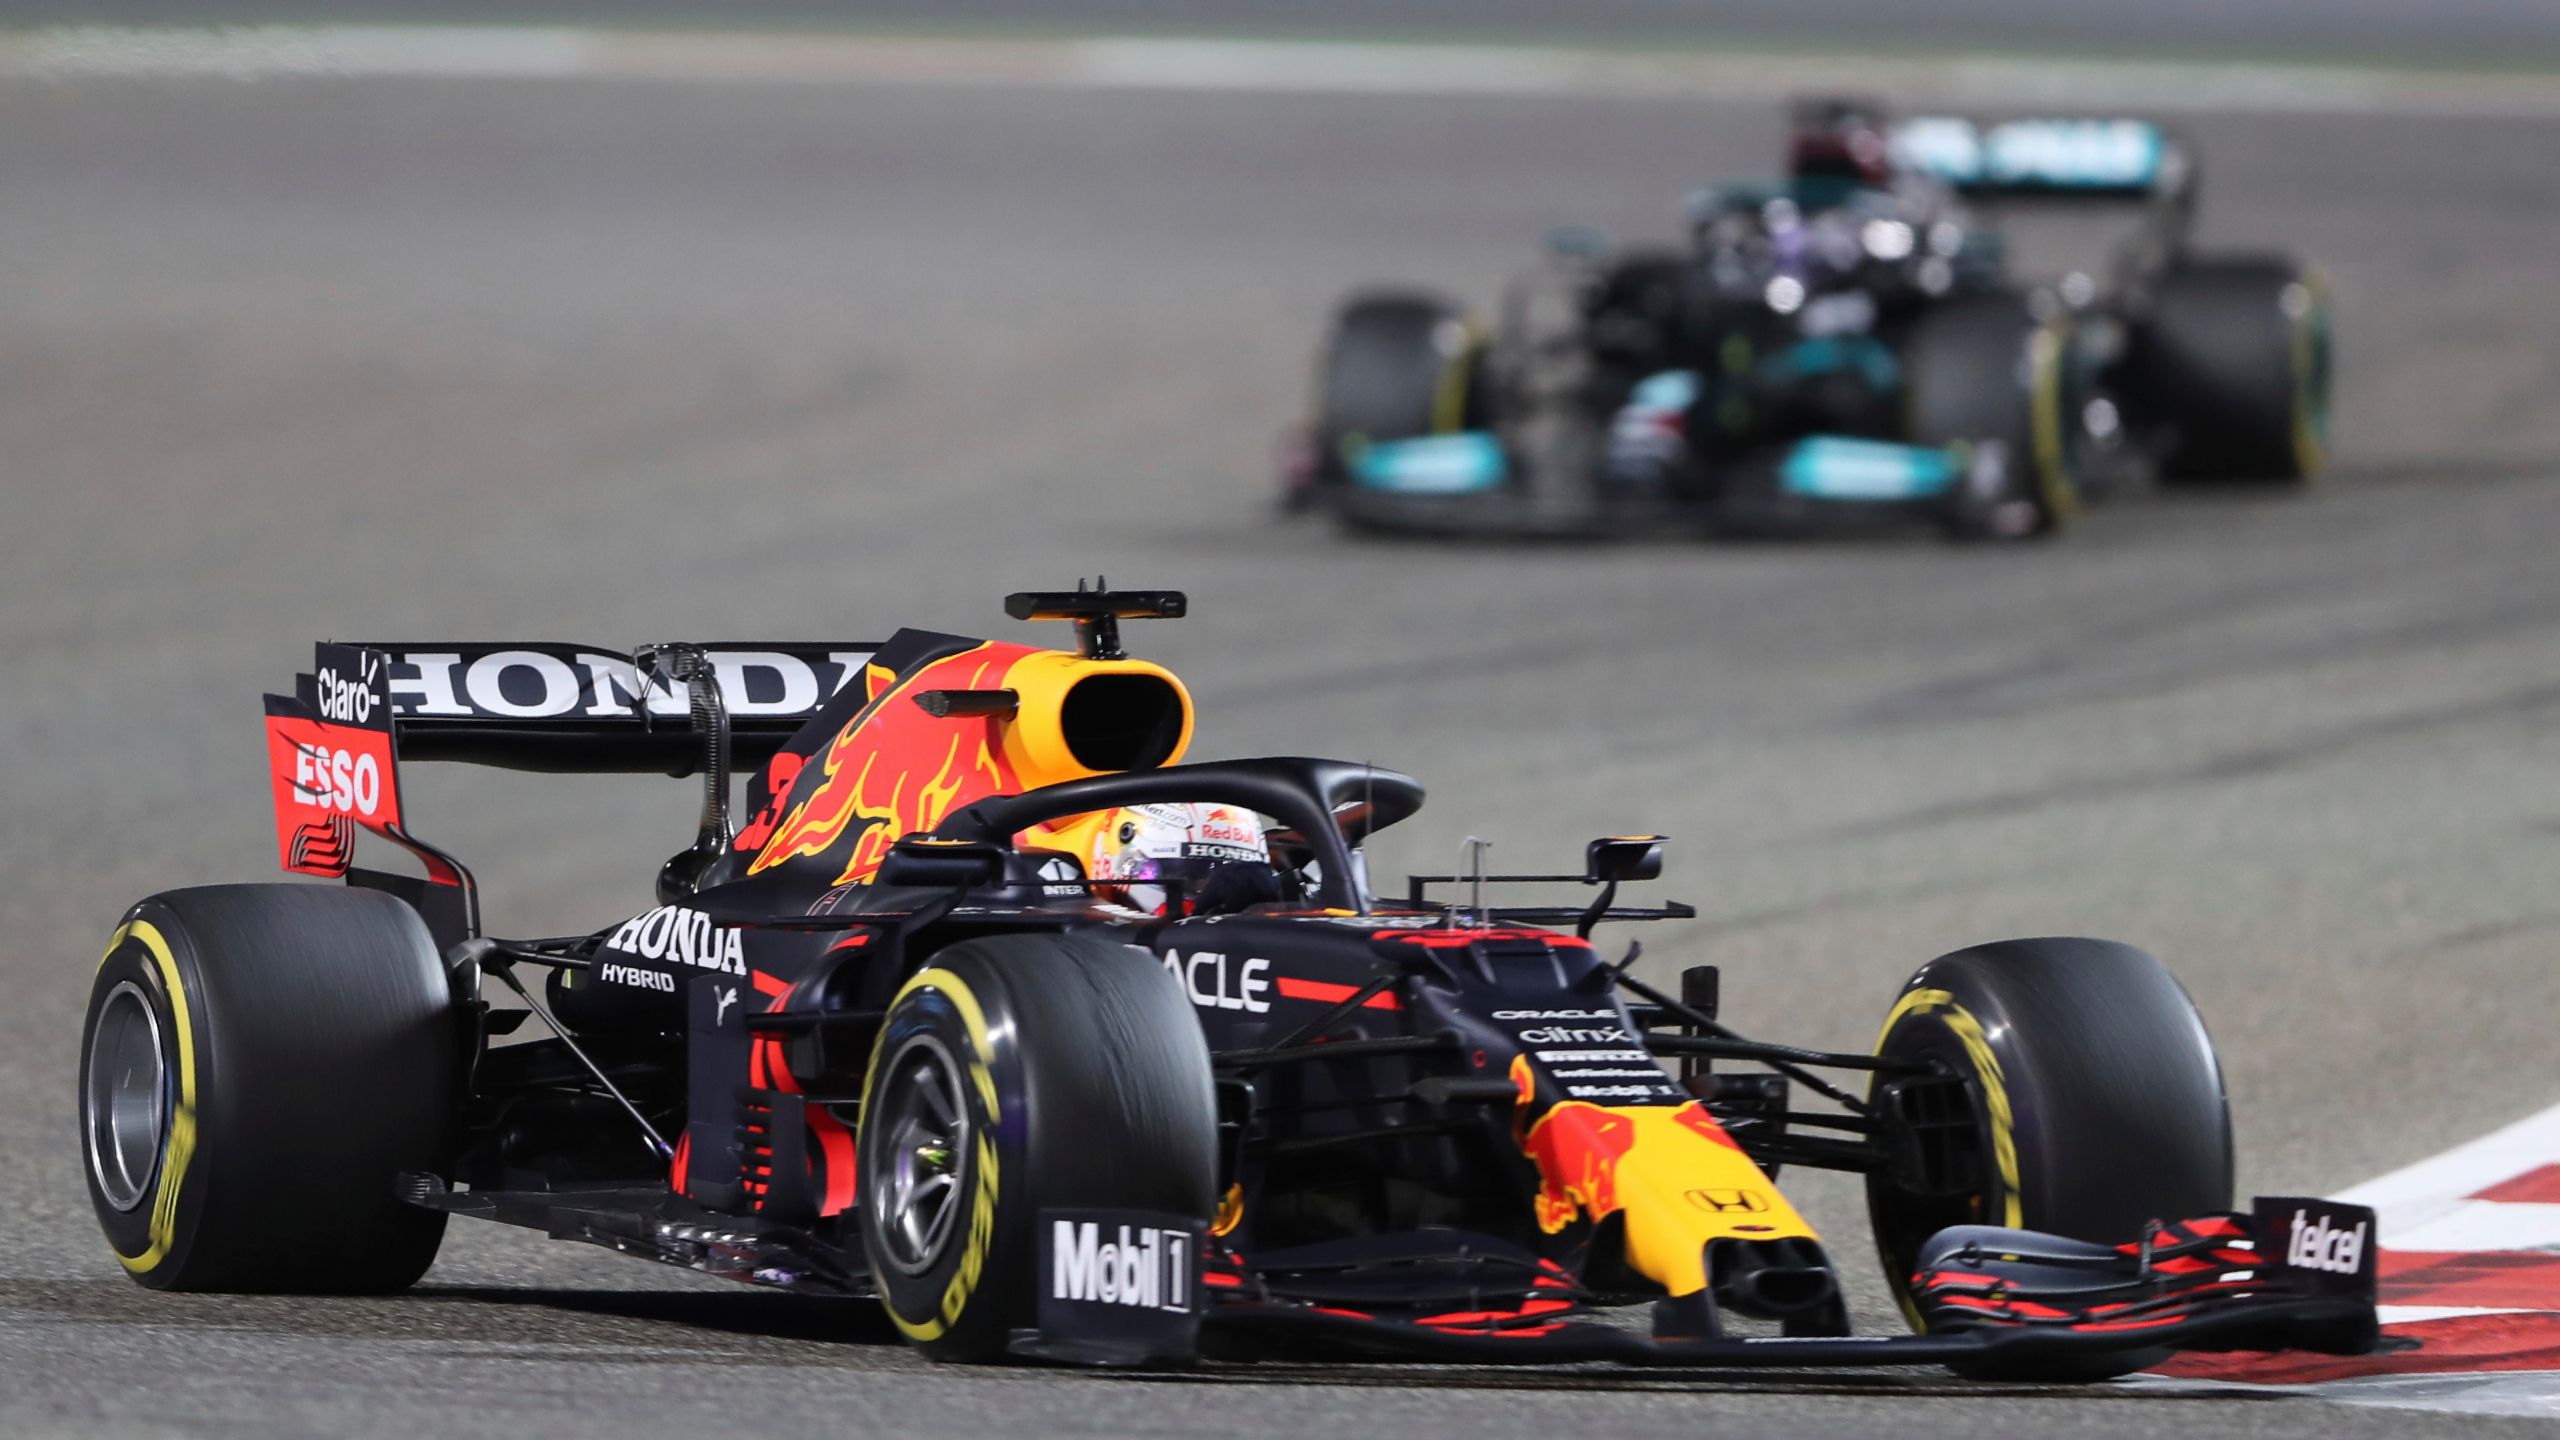 Hamilton Holds Off Verstappen To Win Tense F1 Season Opener. KRQE News 13